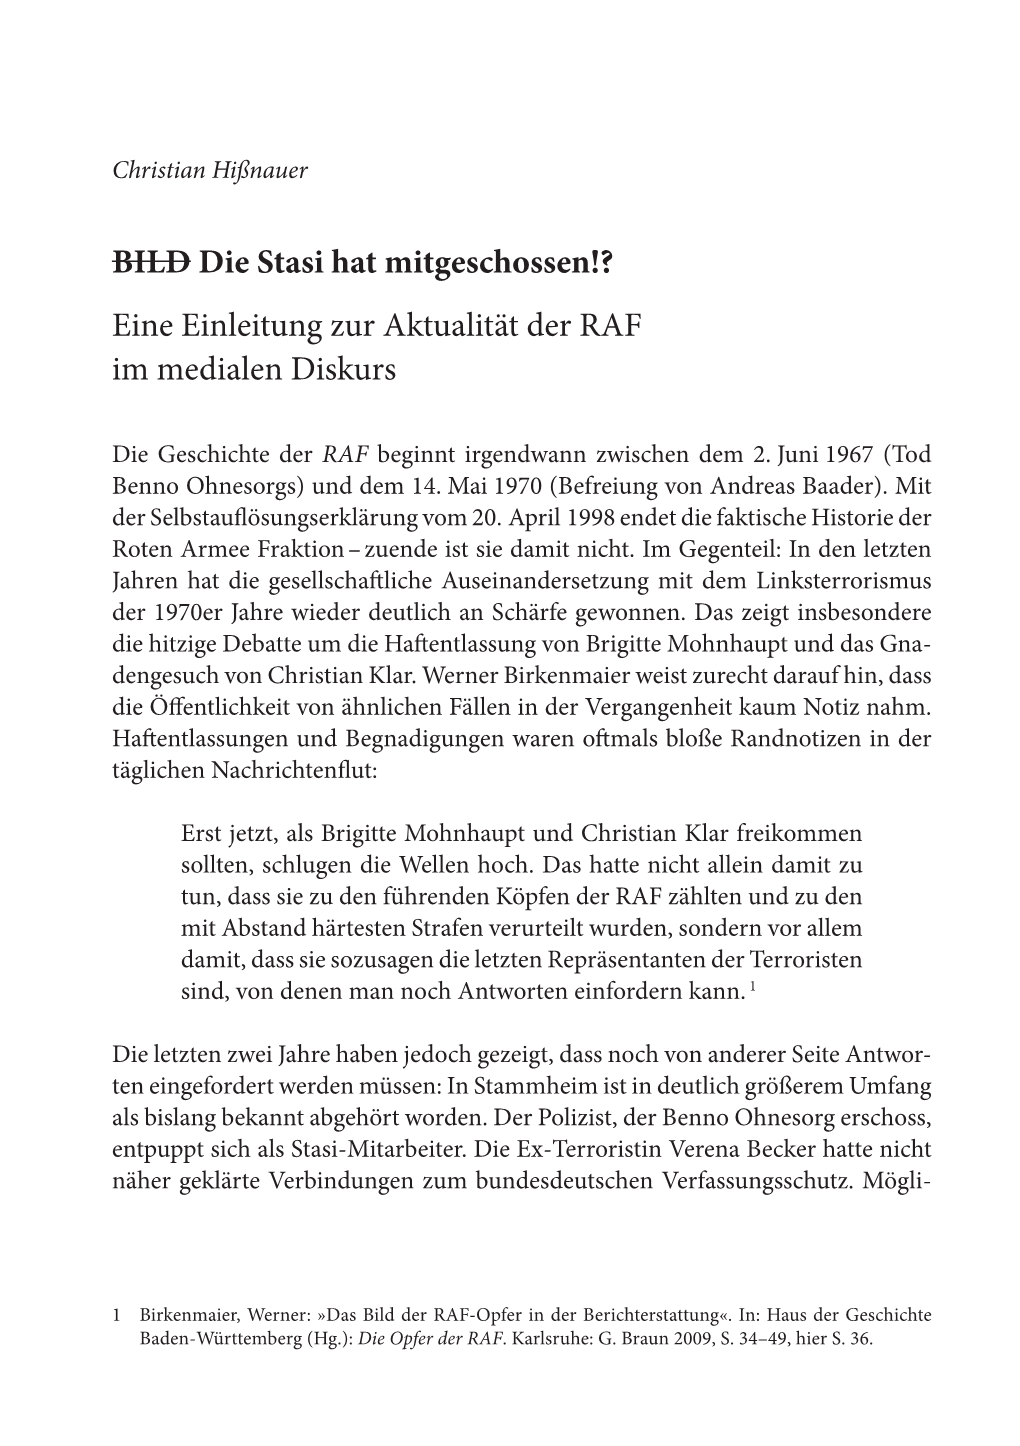 BILD Die Stasi Hat Mitgeschossen!? Eine Einleitung Zur Aktualität Der RAF Im Medialen Diskurs